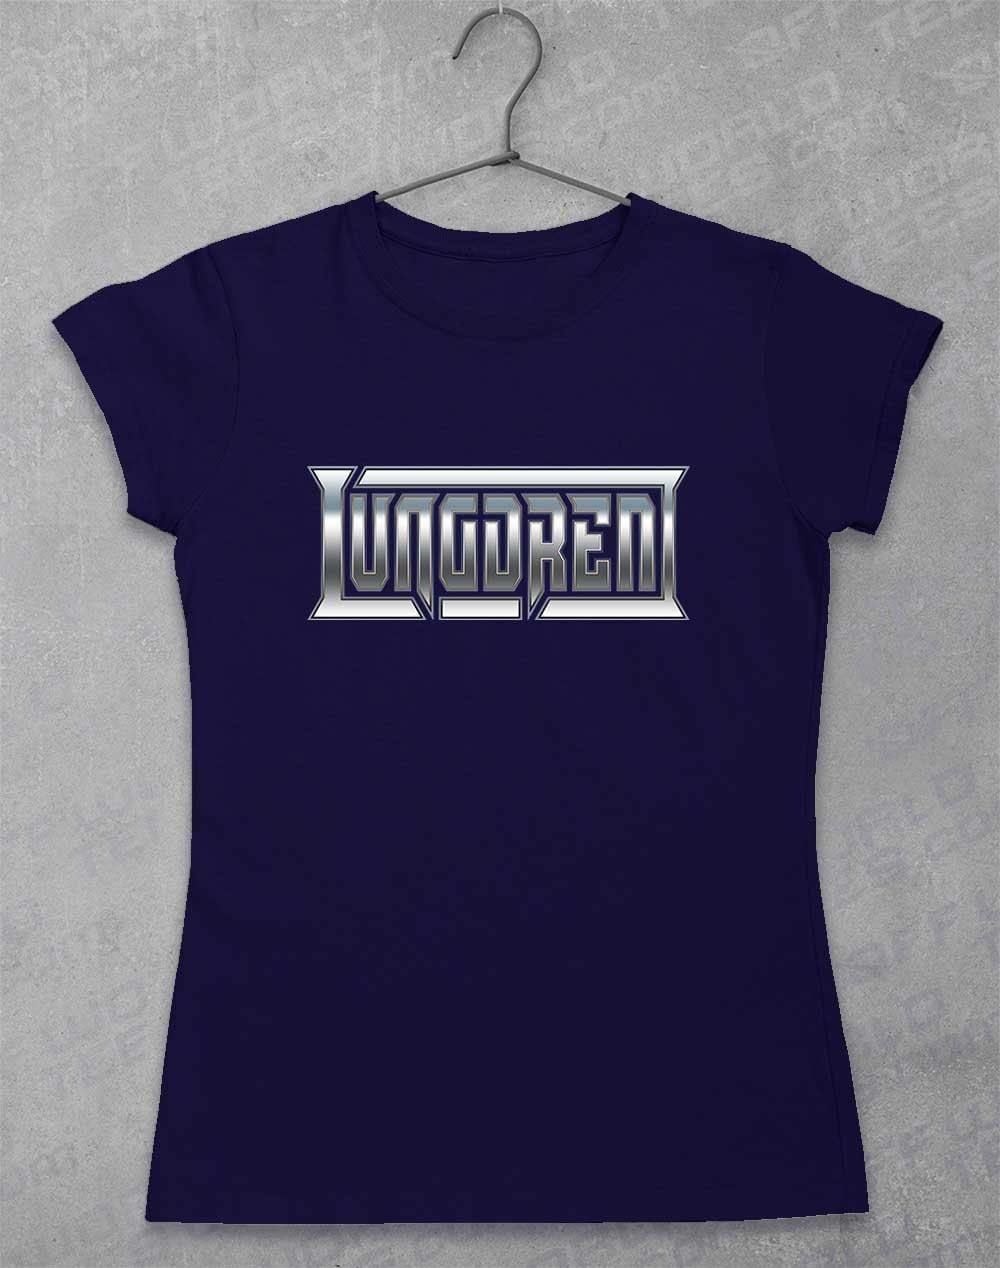 LUNGDREN Chrome Logo - Womens T-Shirt 8-10 / Navy  - Off World Tees